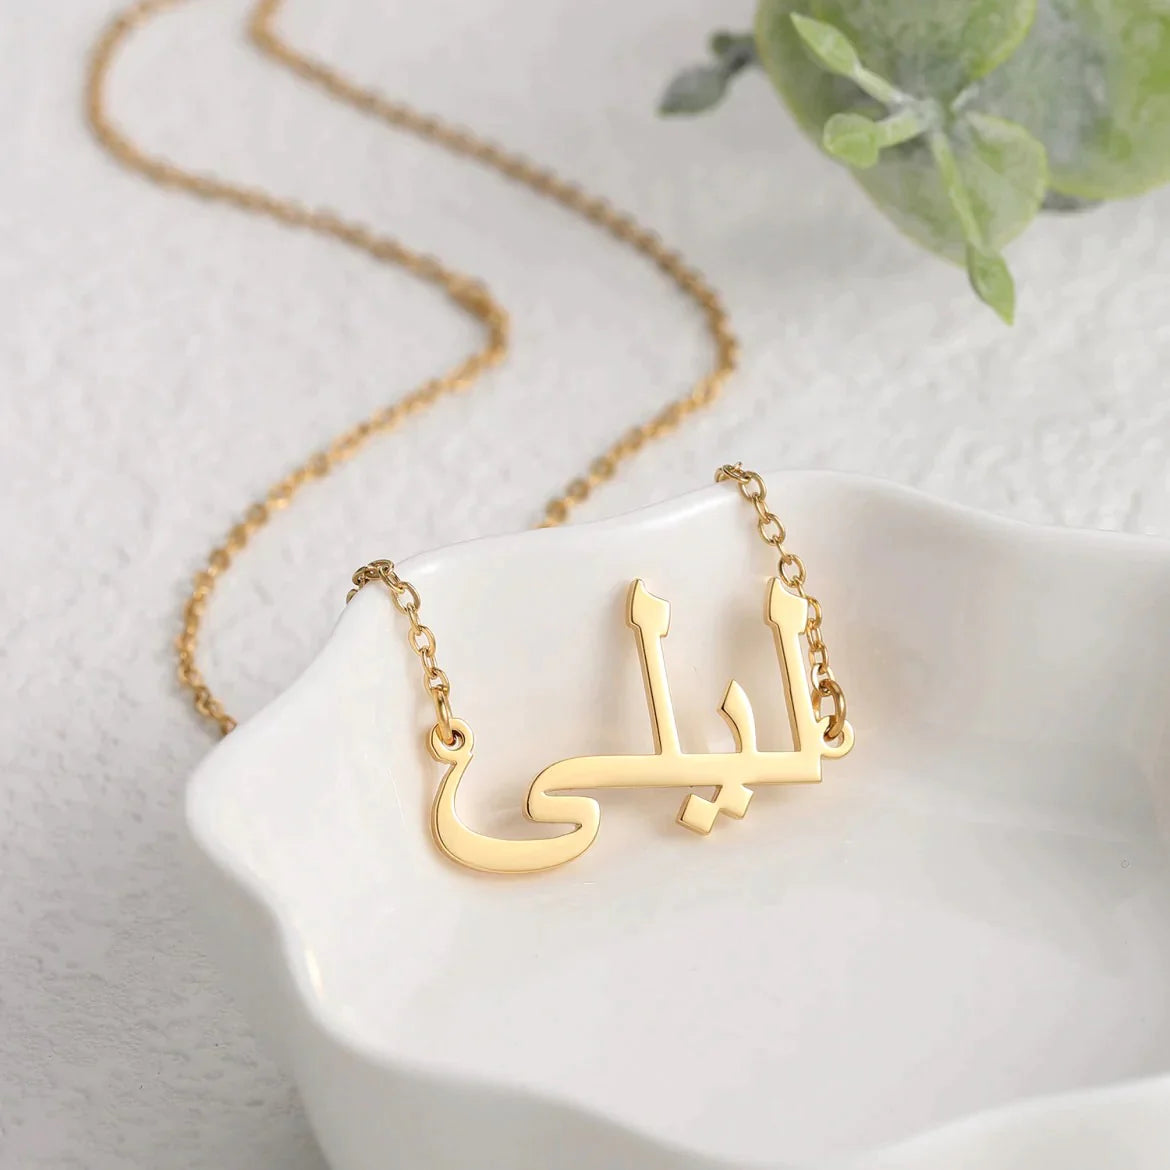 Handmade Arabic Name Necklace - Tiny Gold Arabic Name India | Ubuy